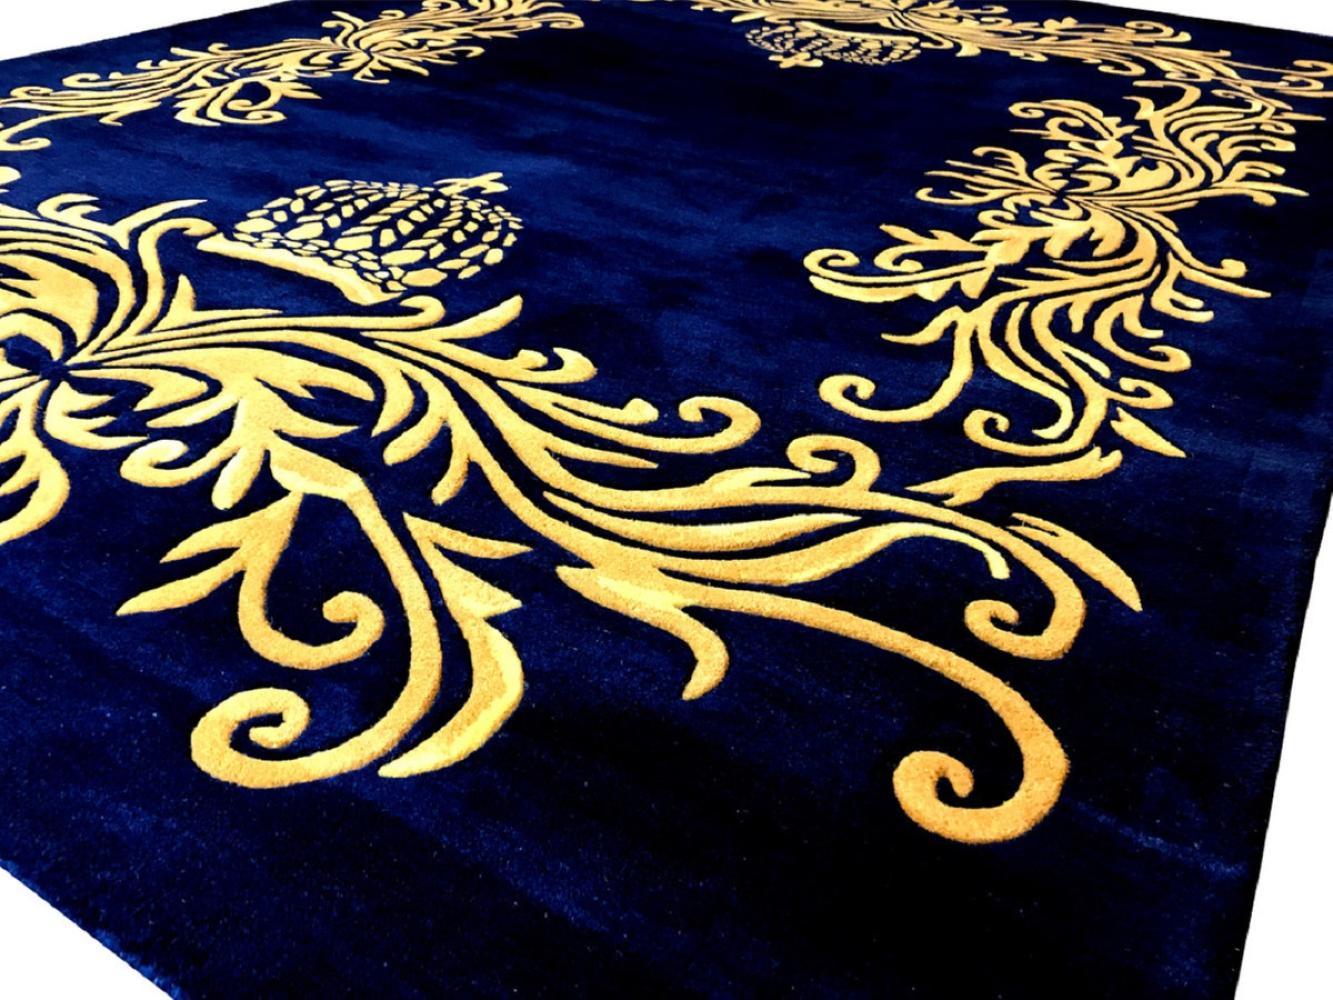 Pompöös by Casa Padrino Luxus Teppich von Harald Glööckler - ALLE GRÖßEN - Krone Royalblau / Gold - Barock Design Teppich - Handgewebt aus Wolle Bild 1